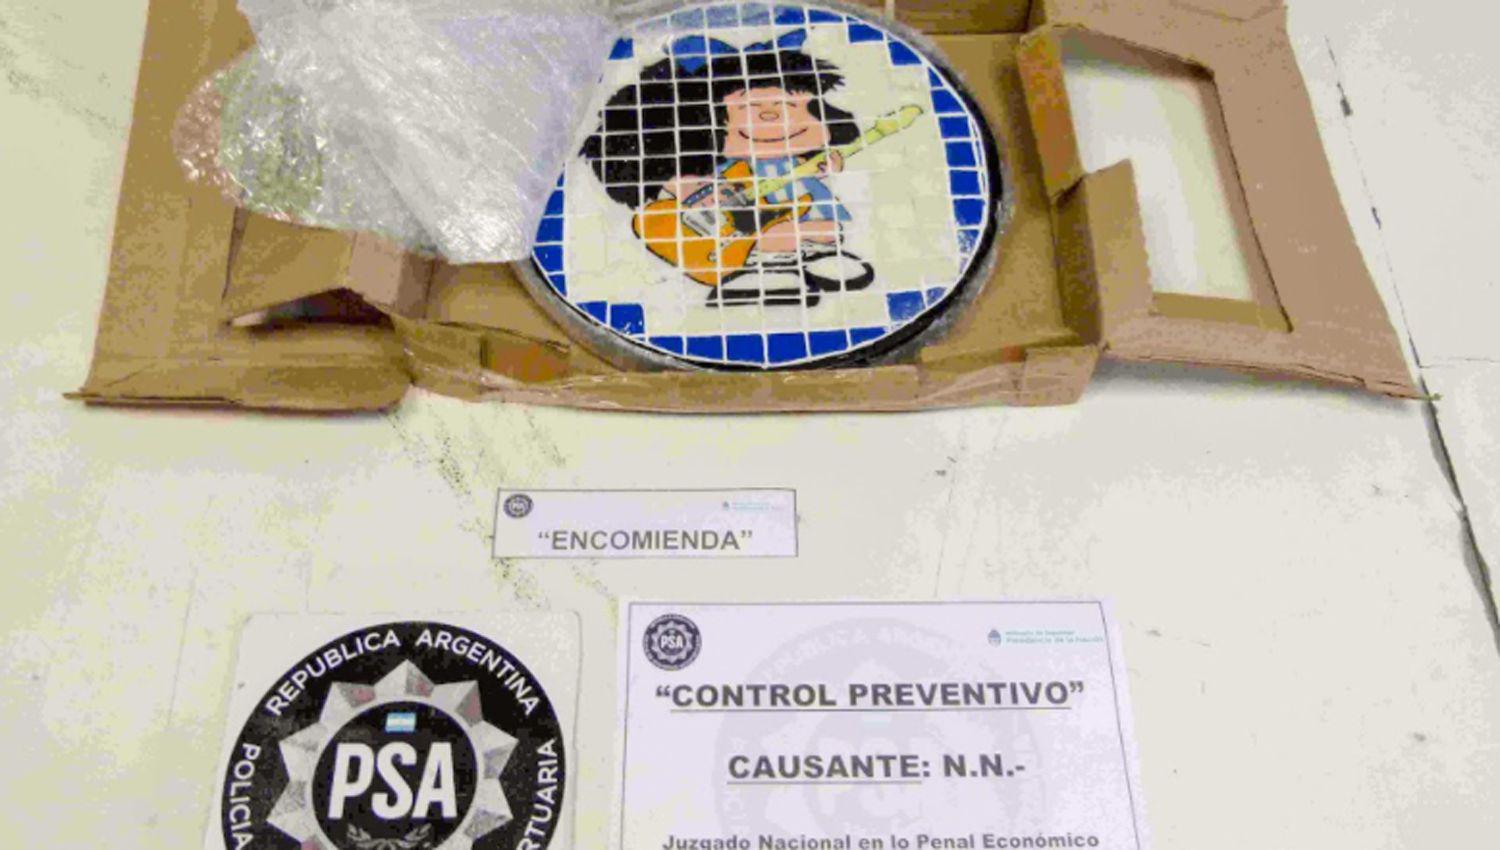 La PSA desarticuloacute una organizacioacuten que traficaba drogas a traveacutes de encomiendas con la imagen de Mafalda